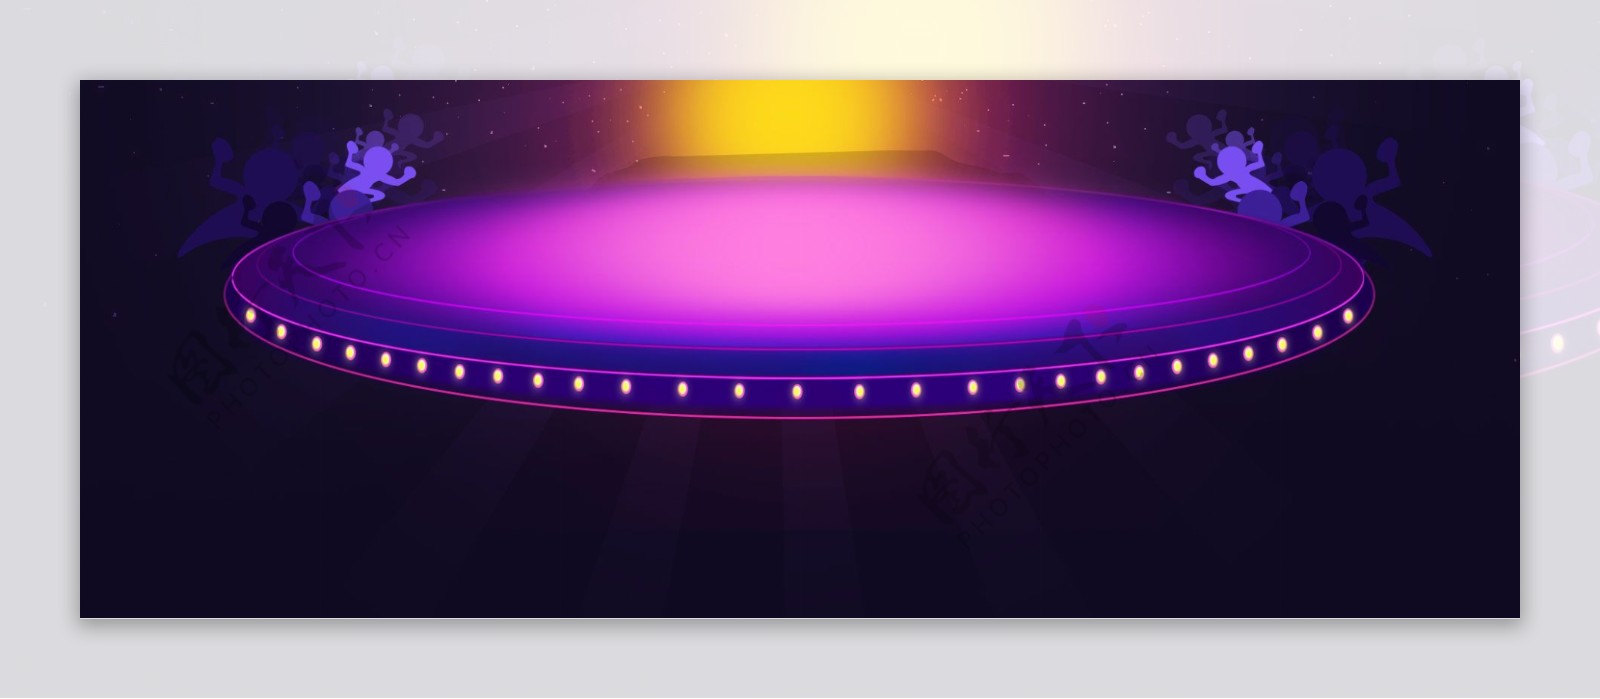 梦幻紫色舞台背景